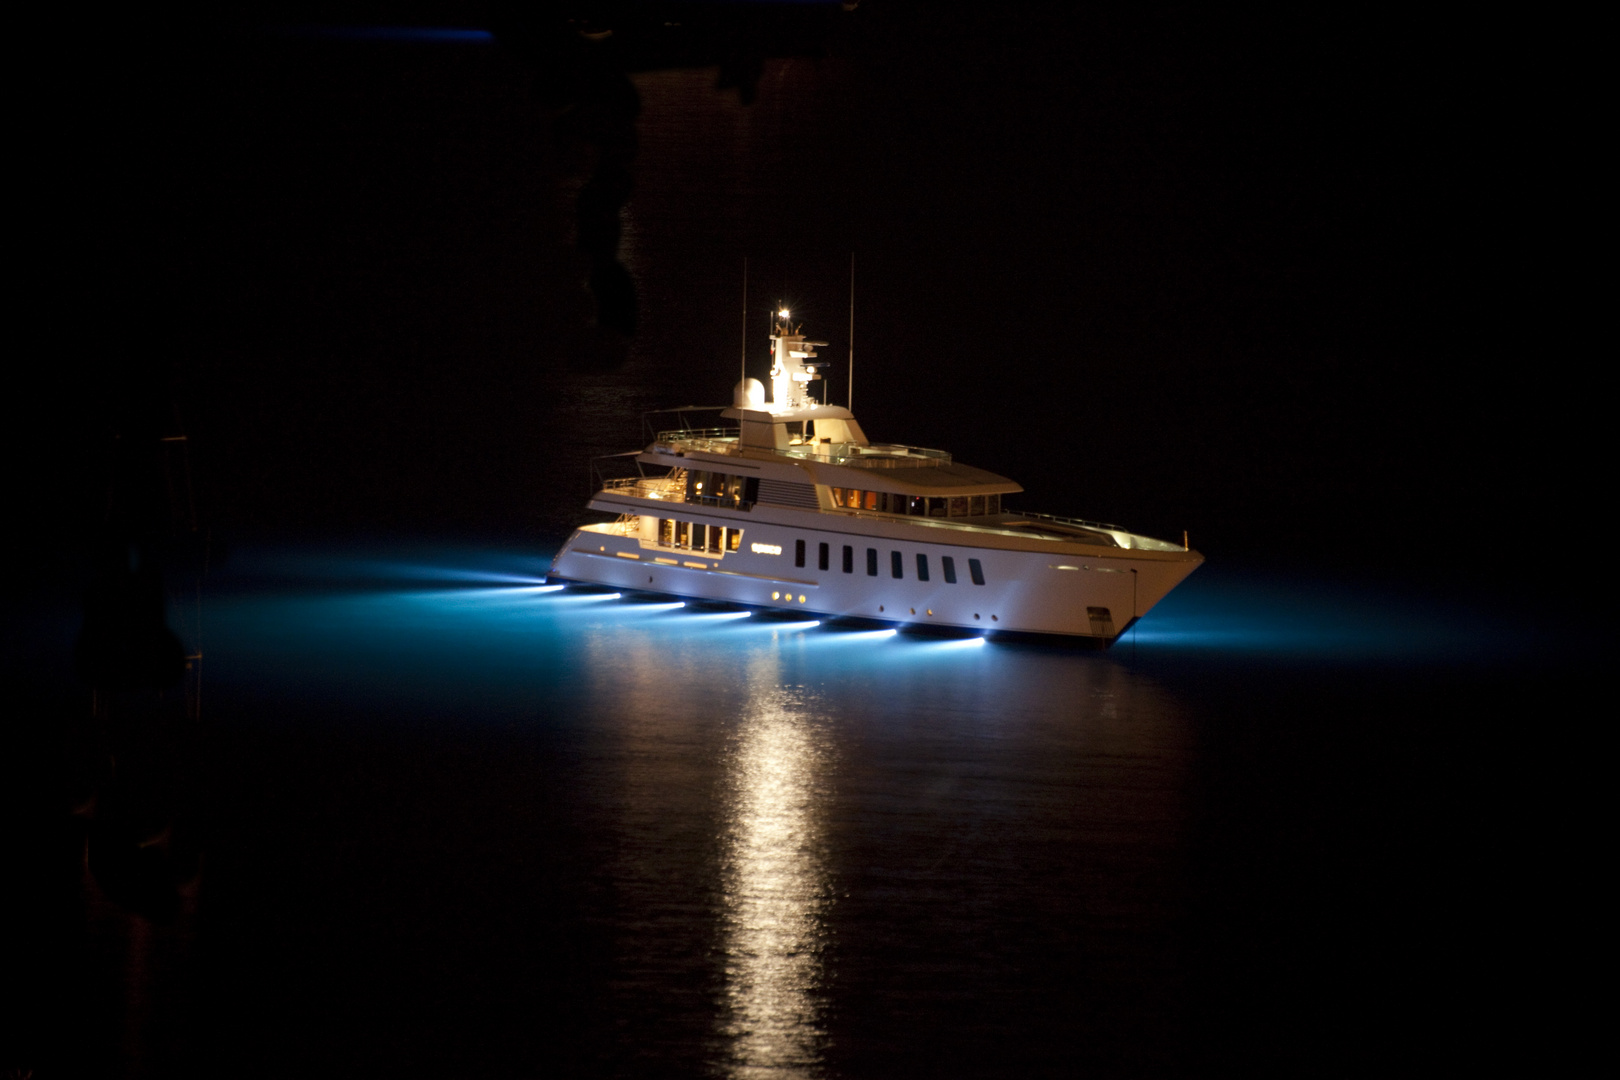 yacht de nuit (baie de villefranche)